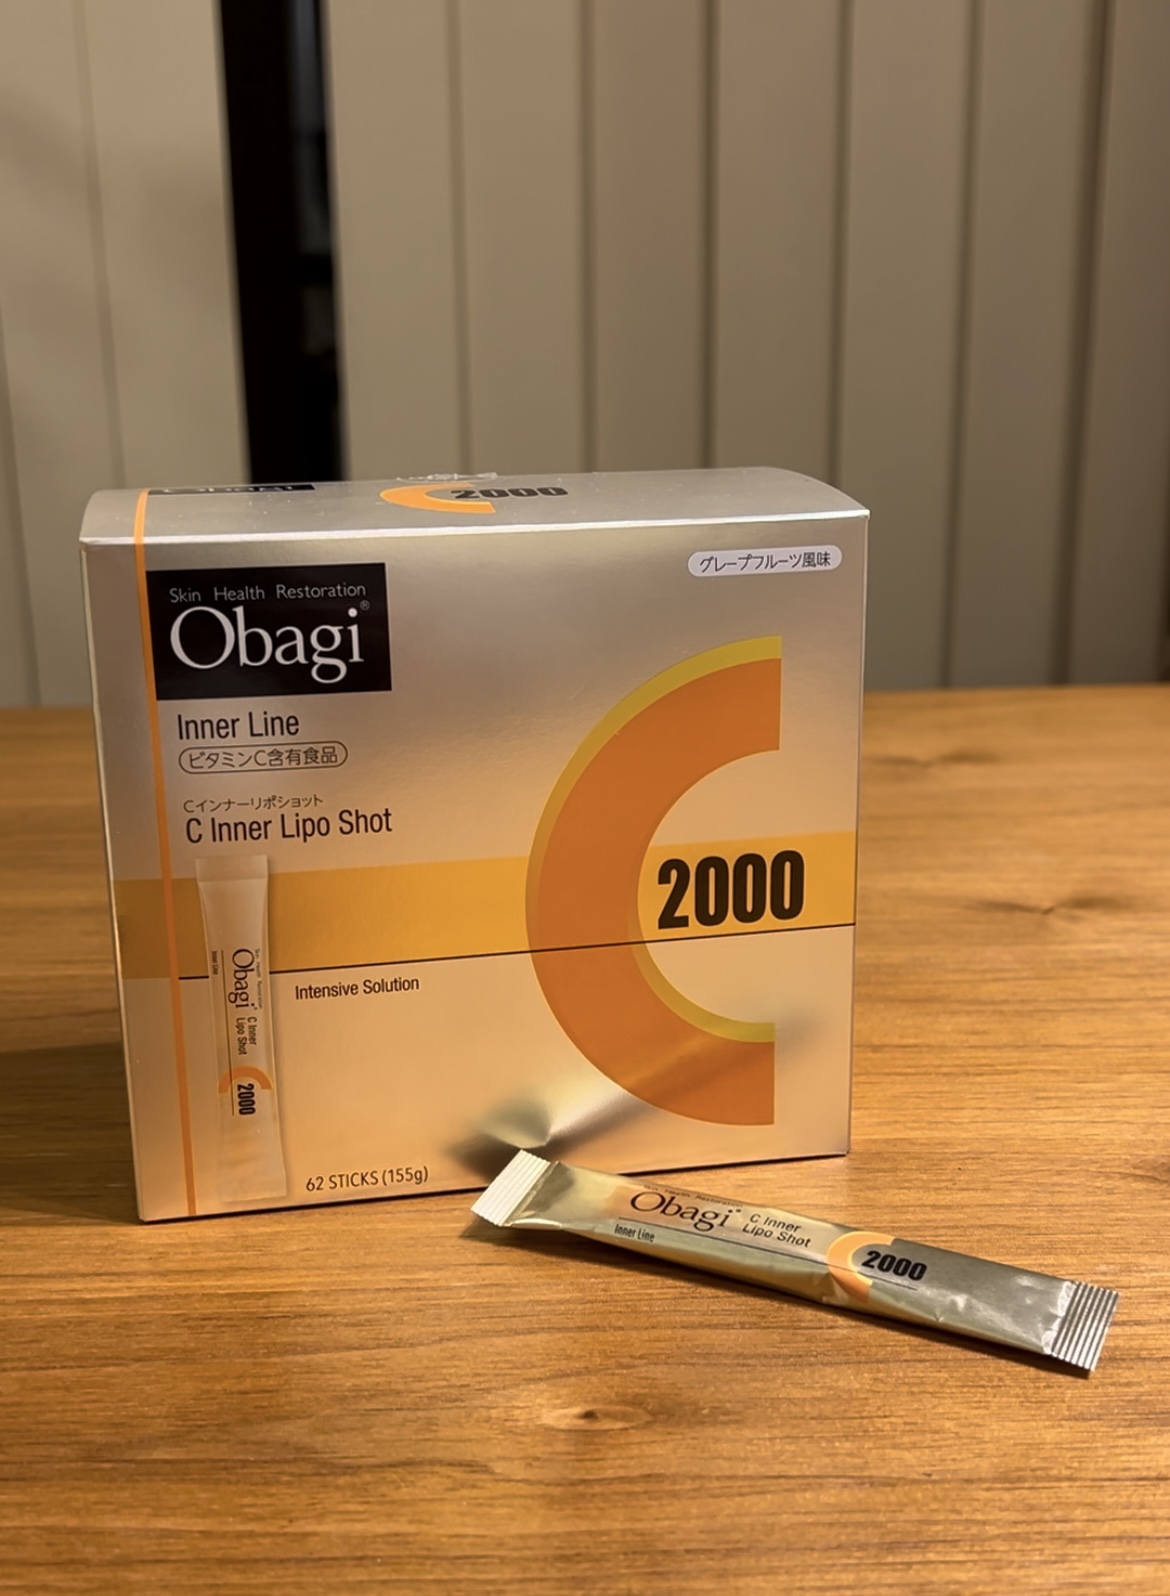 オバジ(Obagi)のサプリメント「オバジCインナーリポショットの外箱と個包装